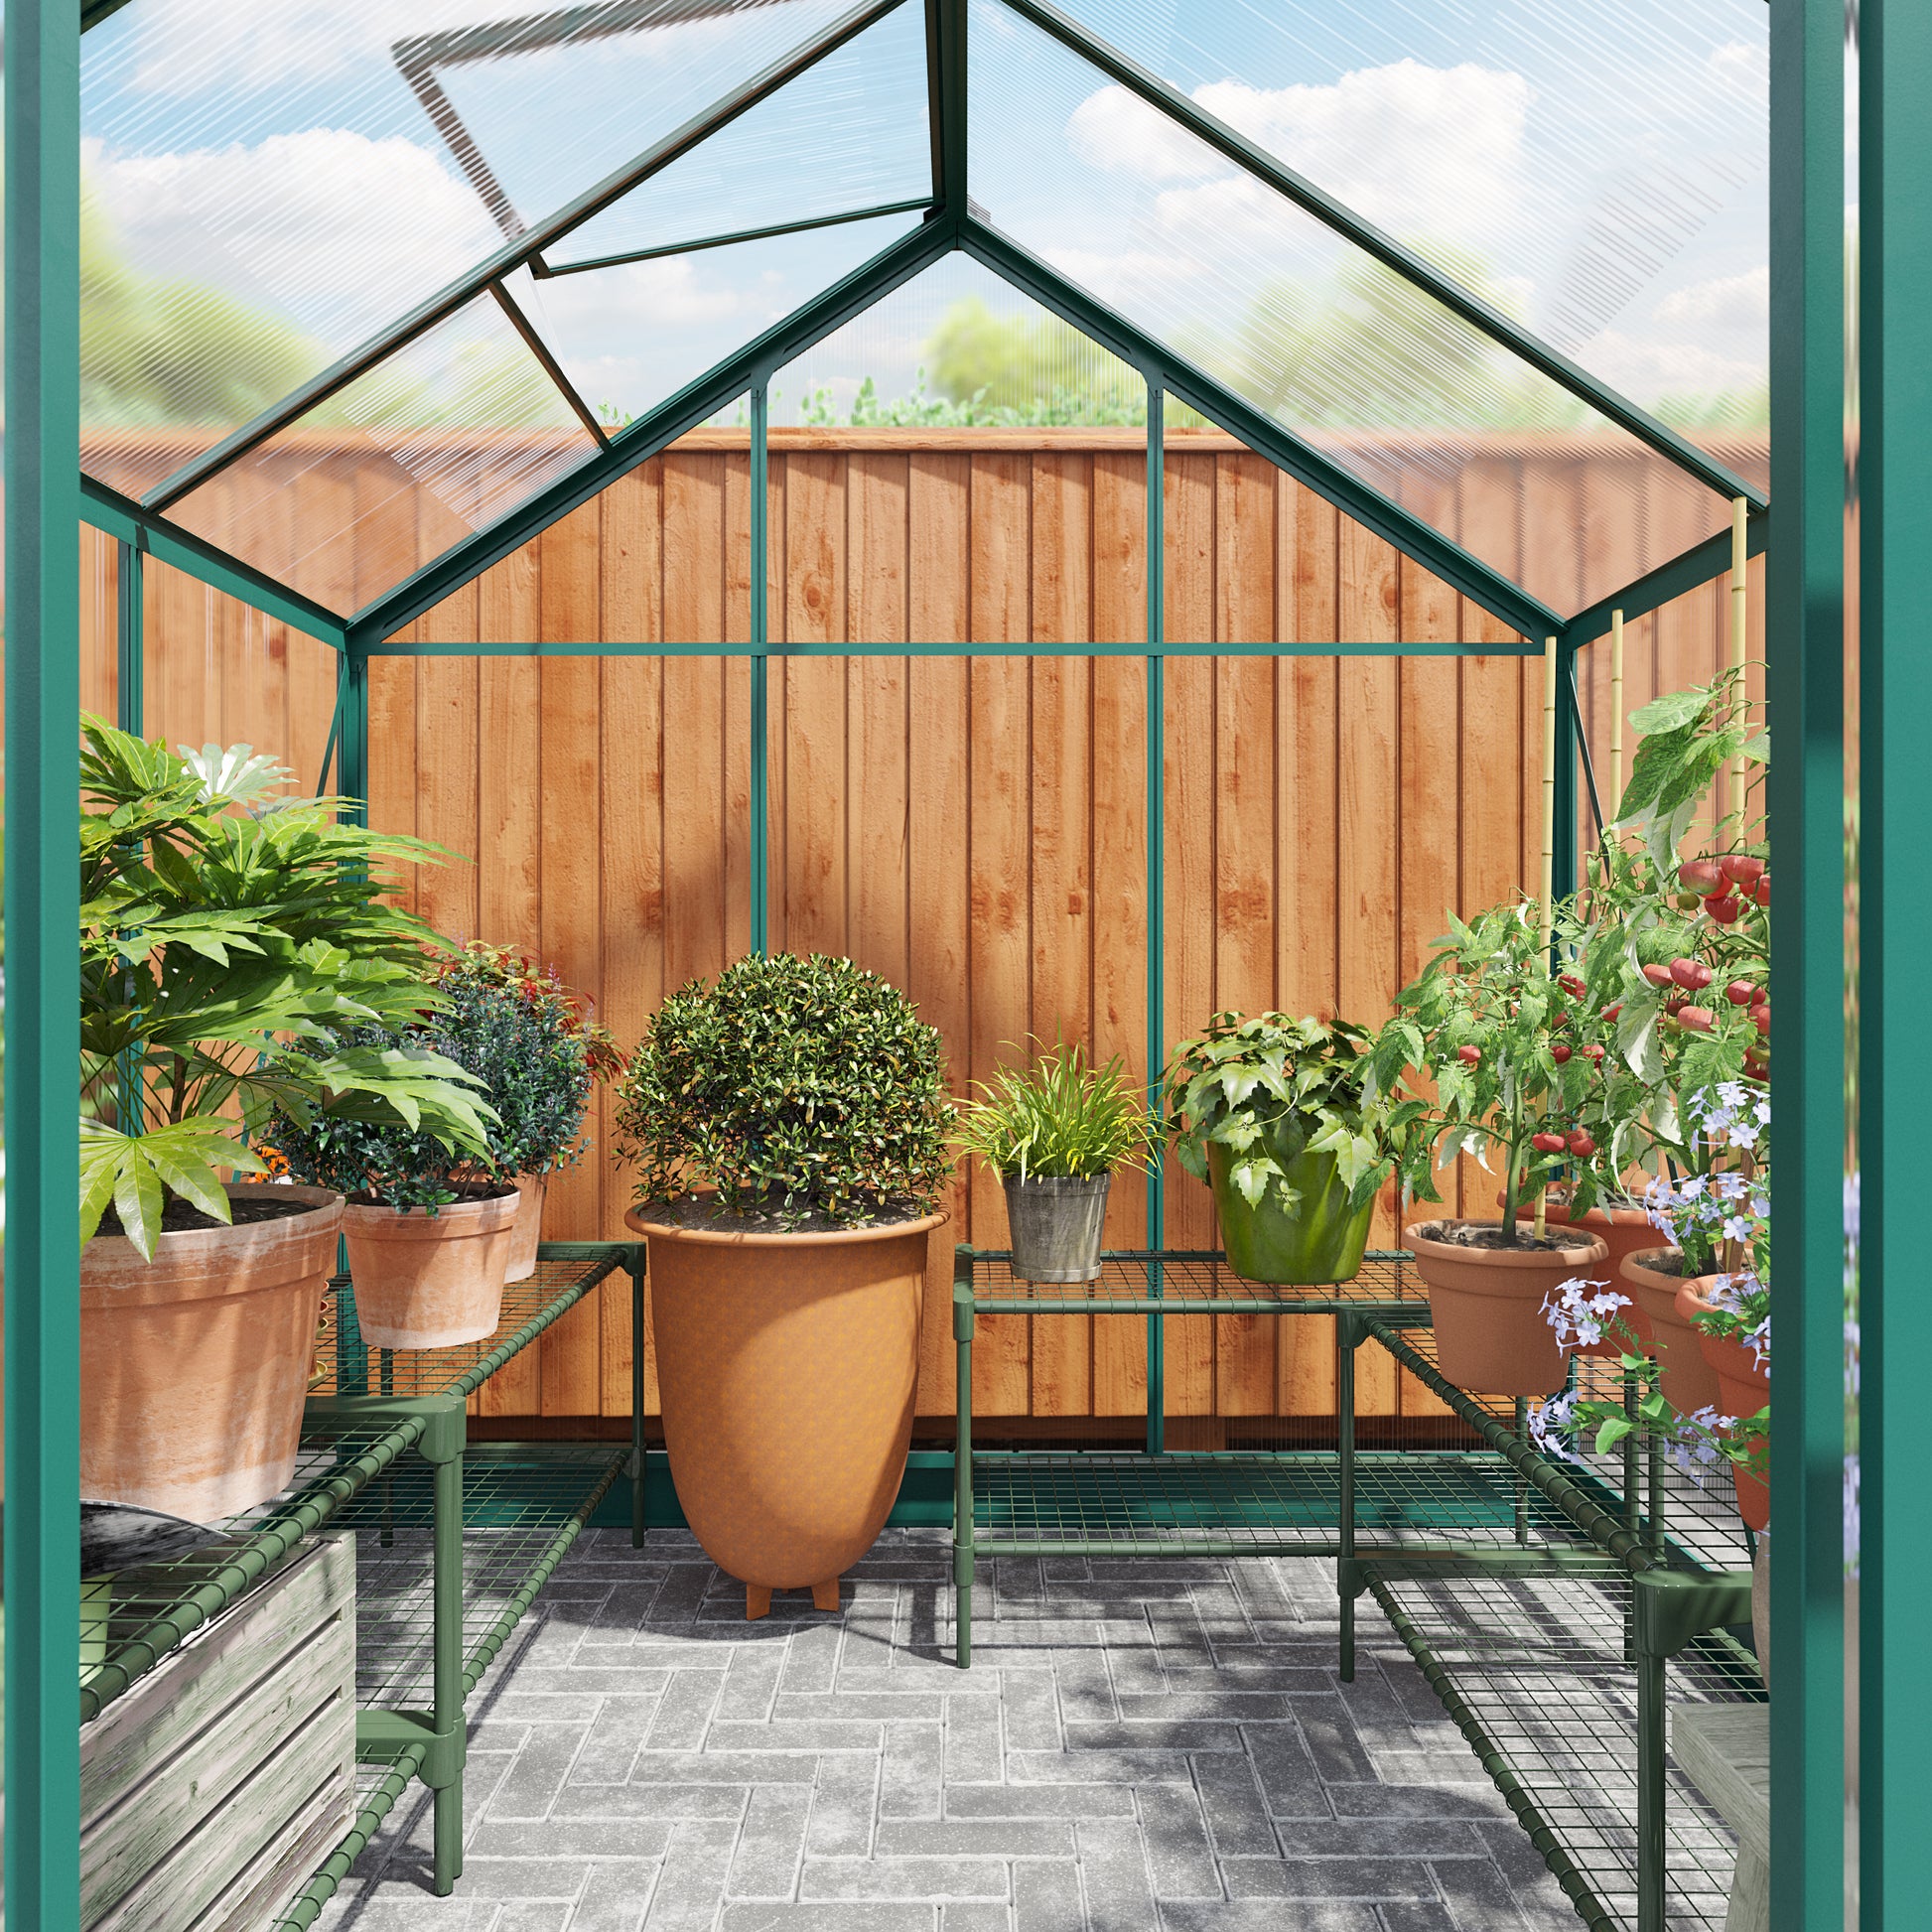 Rosette Hobby 6 x 6 Aluminium Polycarbonate Greenhouse - Premium Garden